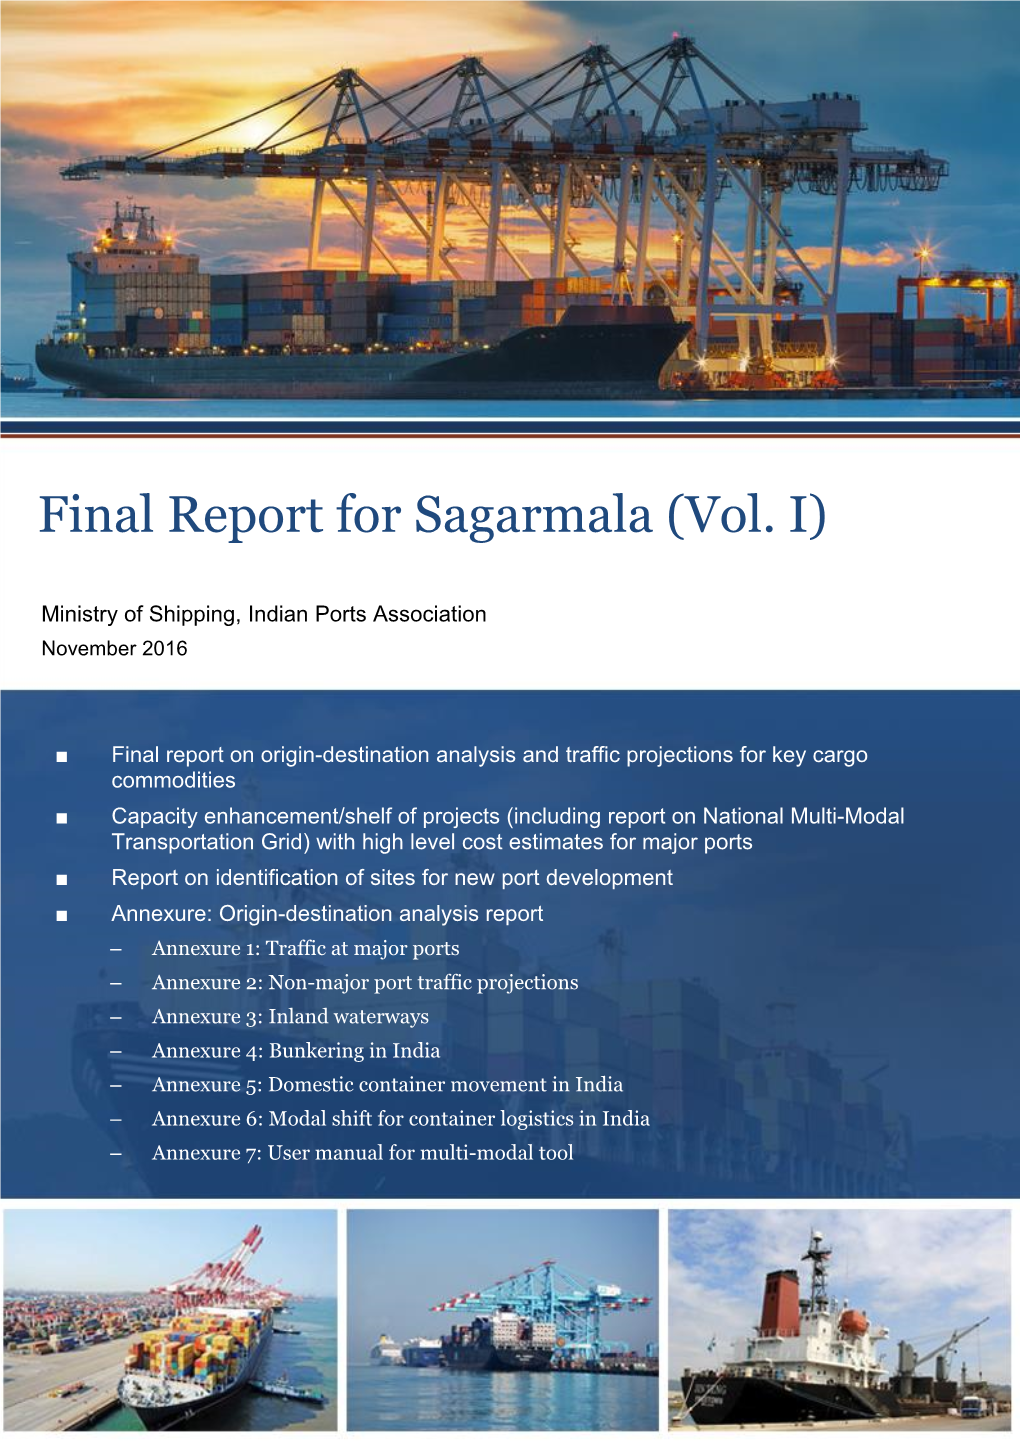 Final Report for Sagarmala (Vol. I)